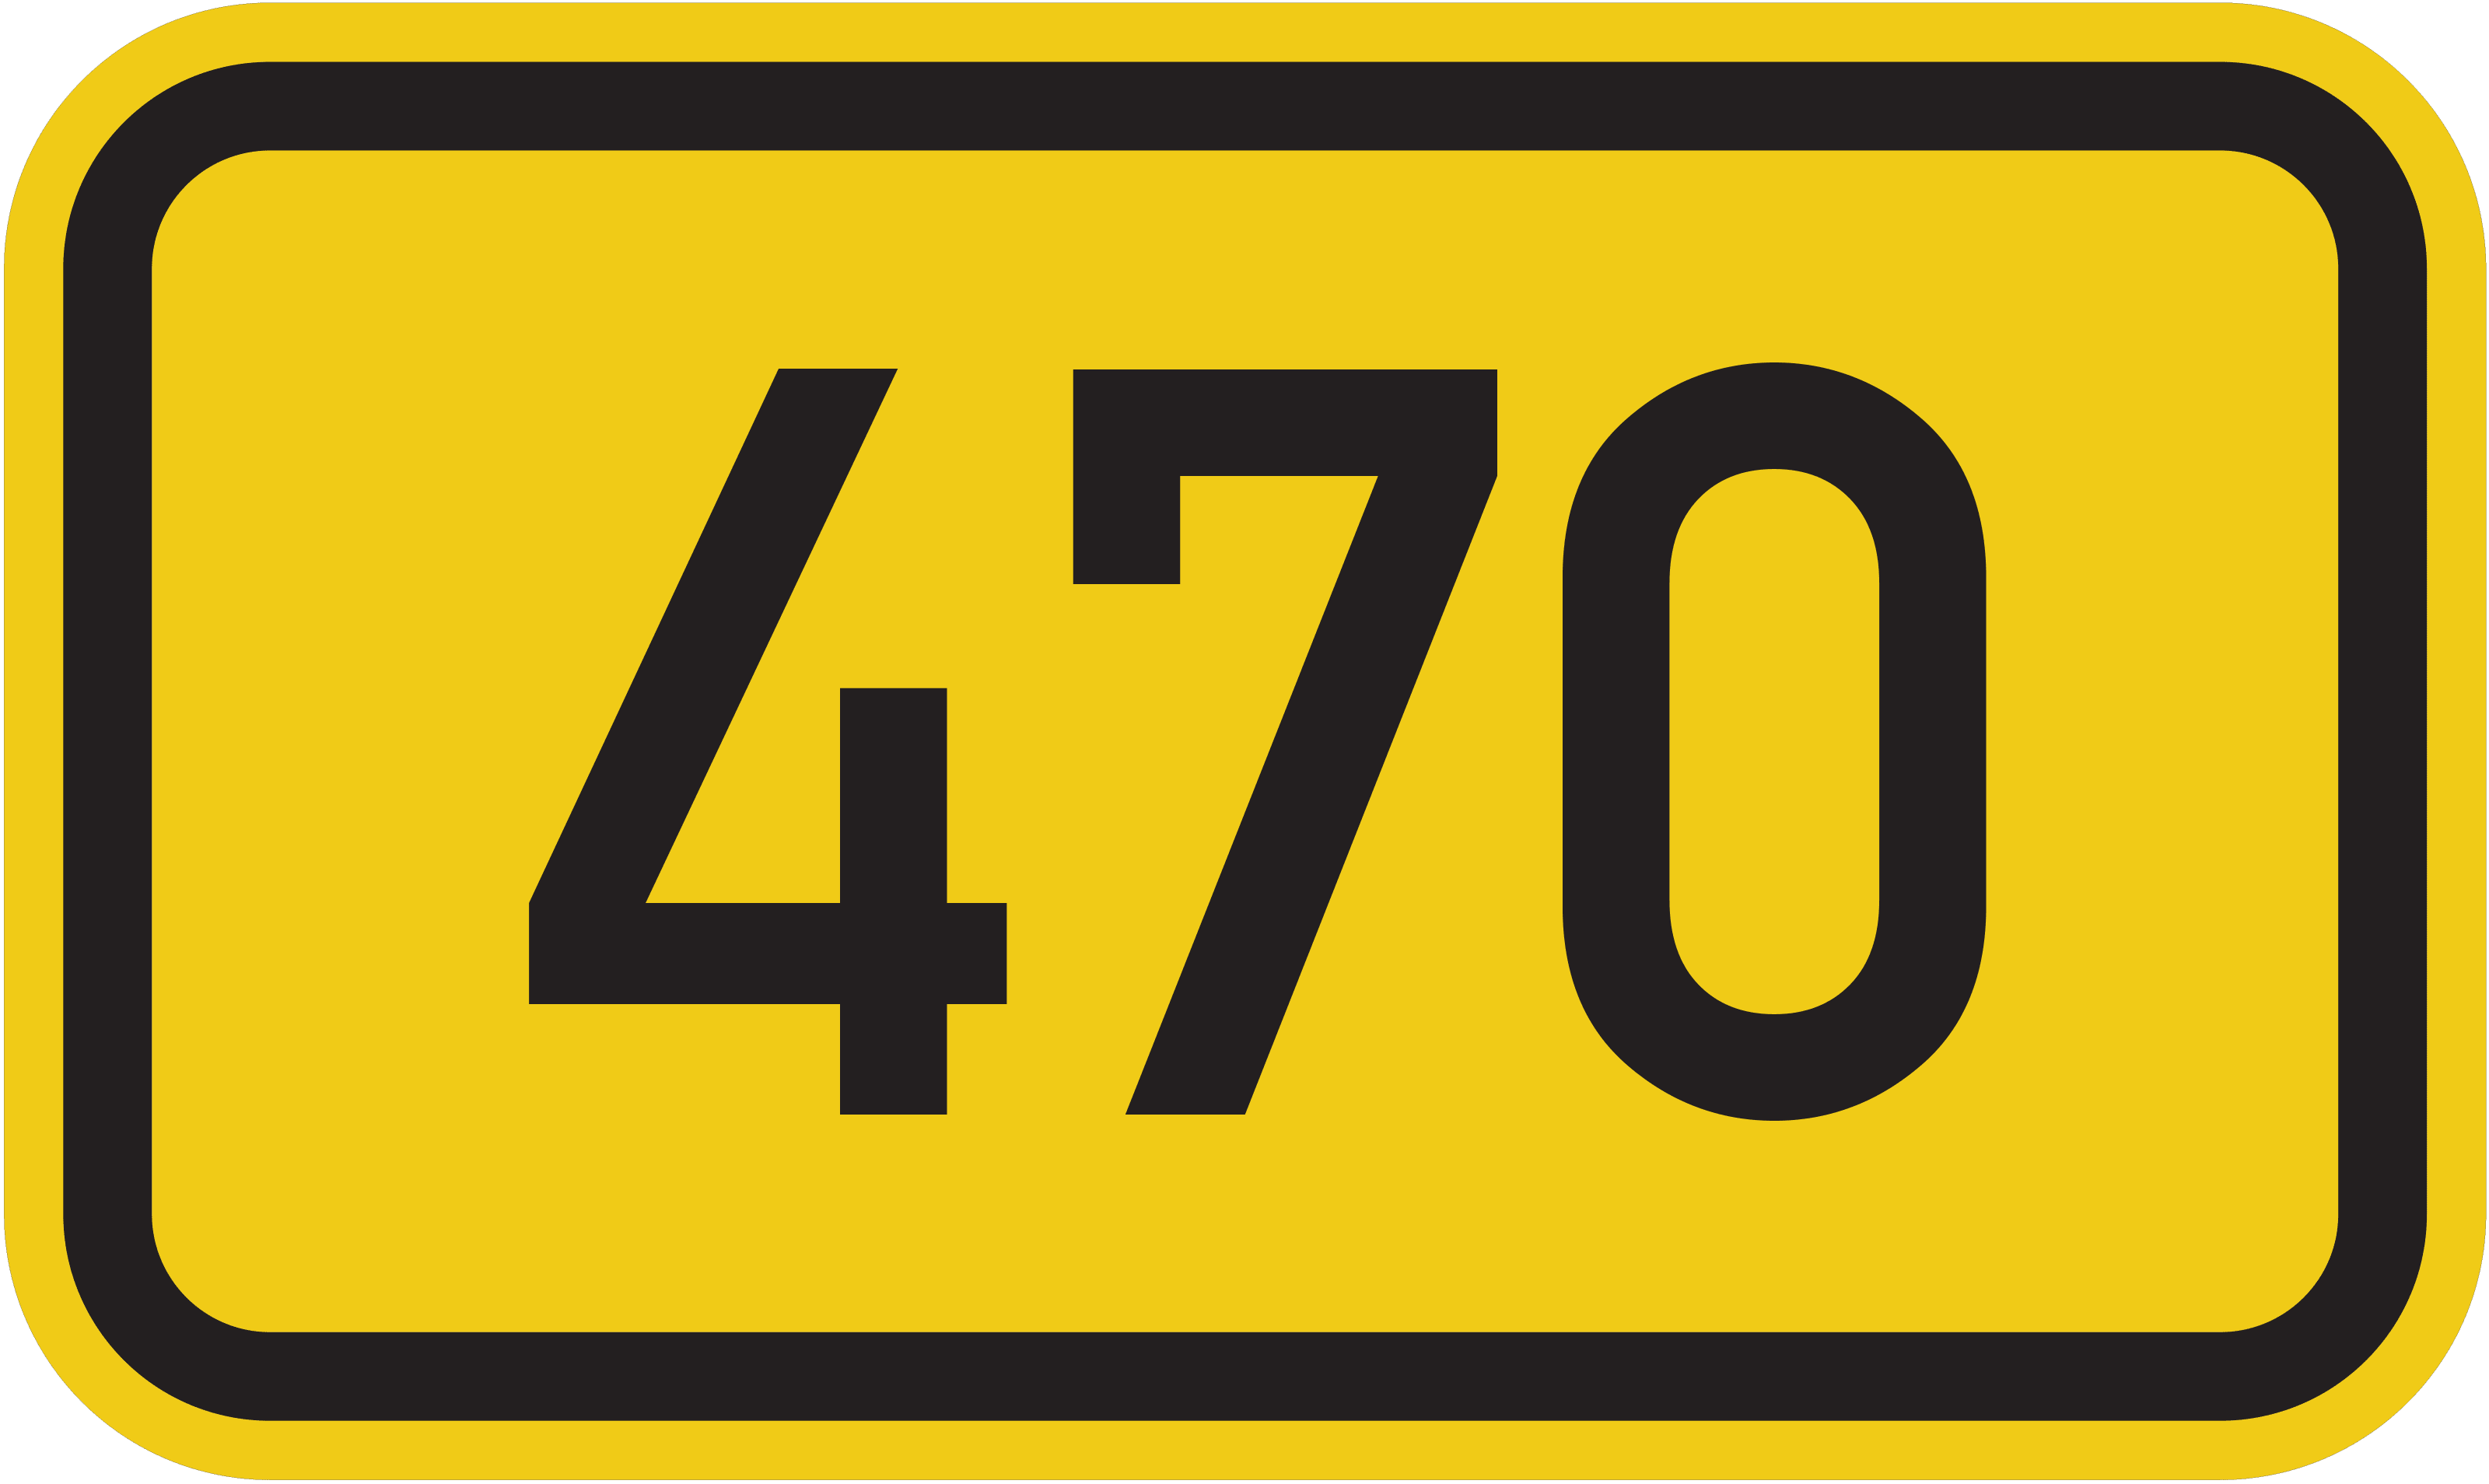 Bundesstraße B 470